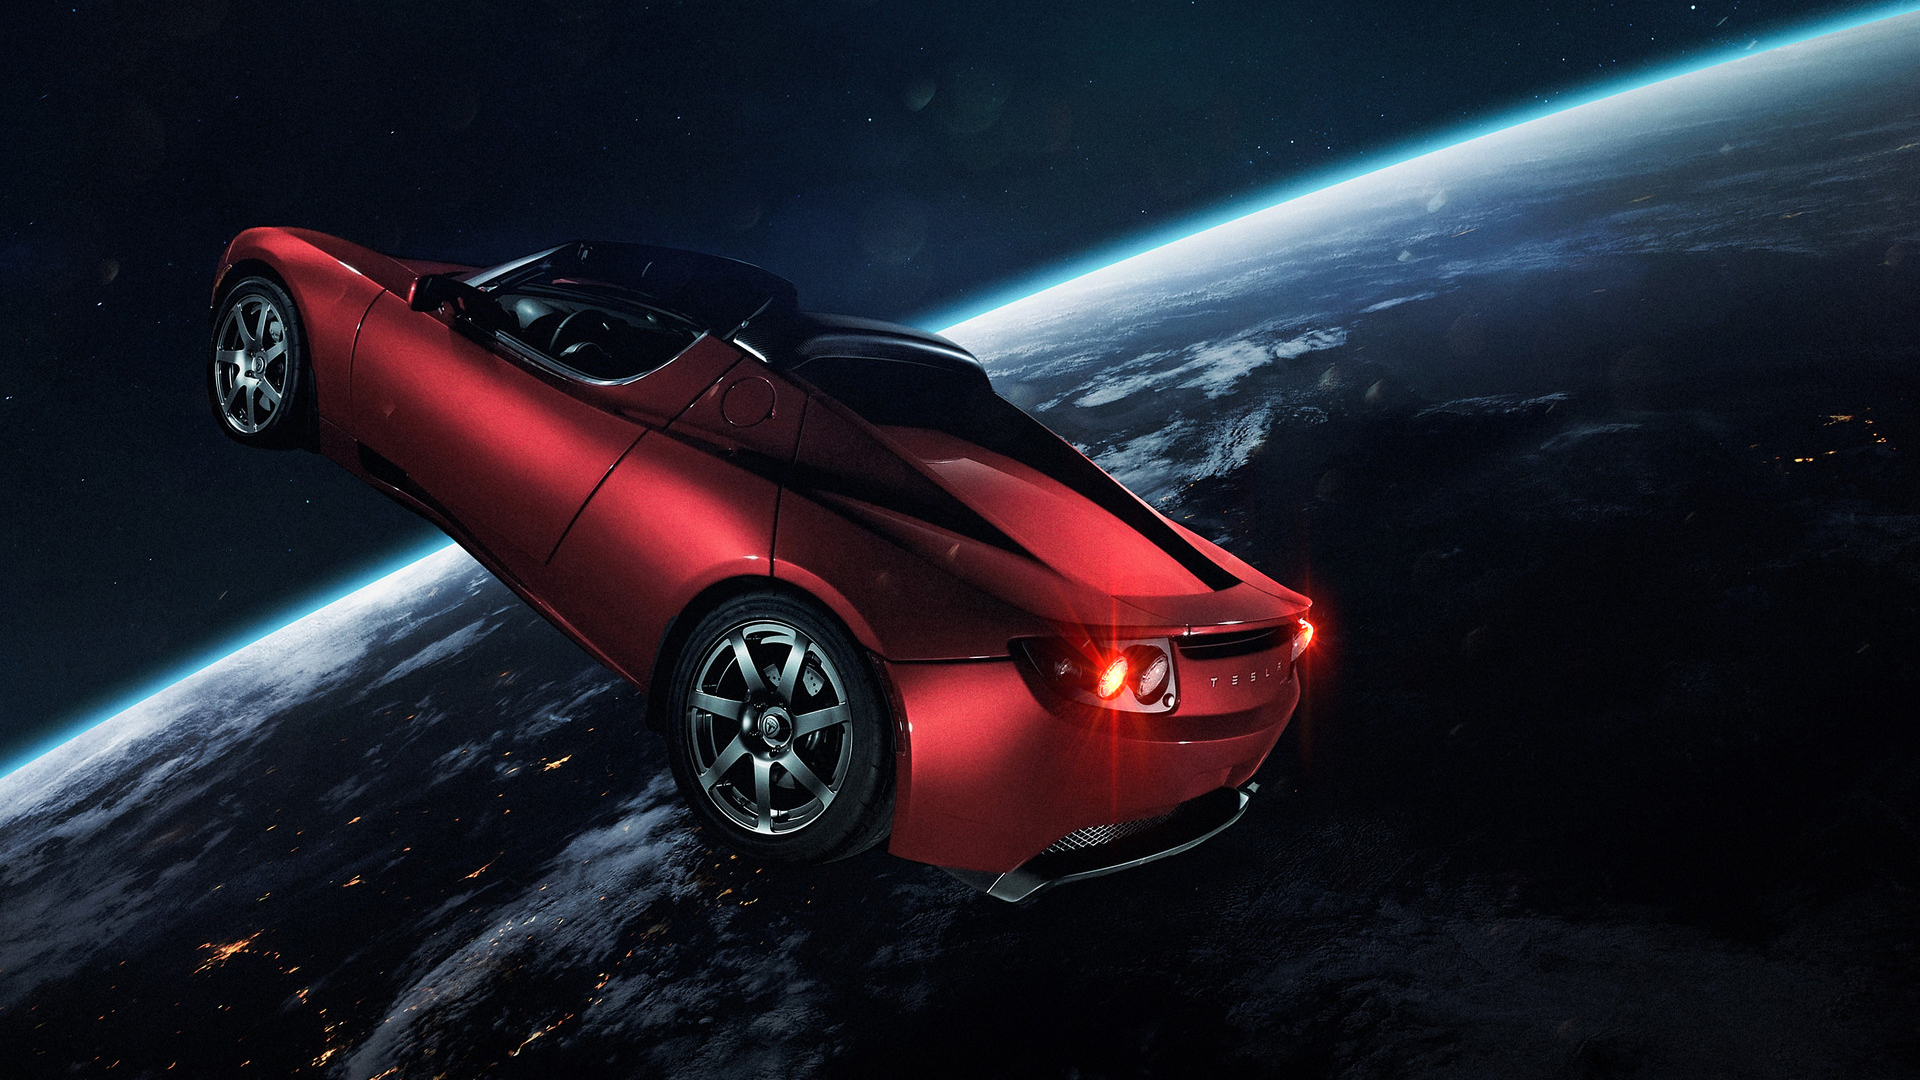 Elon Musk Tesla In Space - HD Wallpaper 